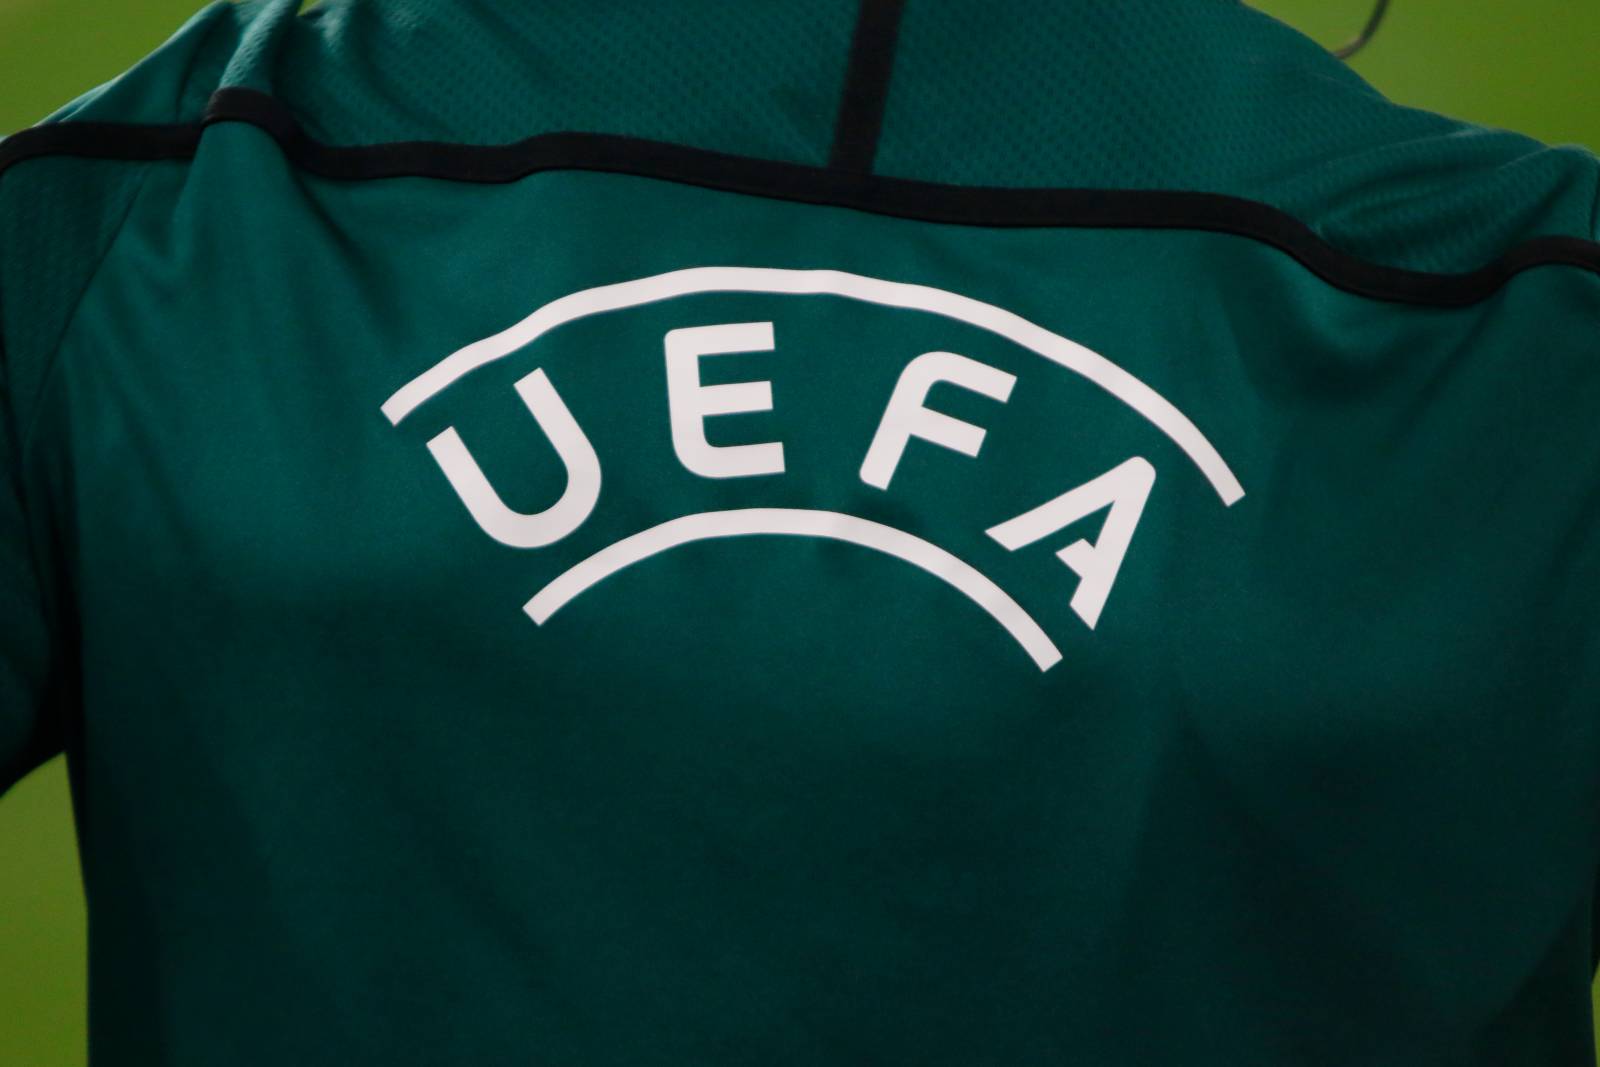 УЕФА запустит программу по борьбе с расизмом в интернете